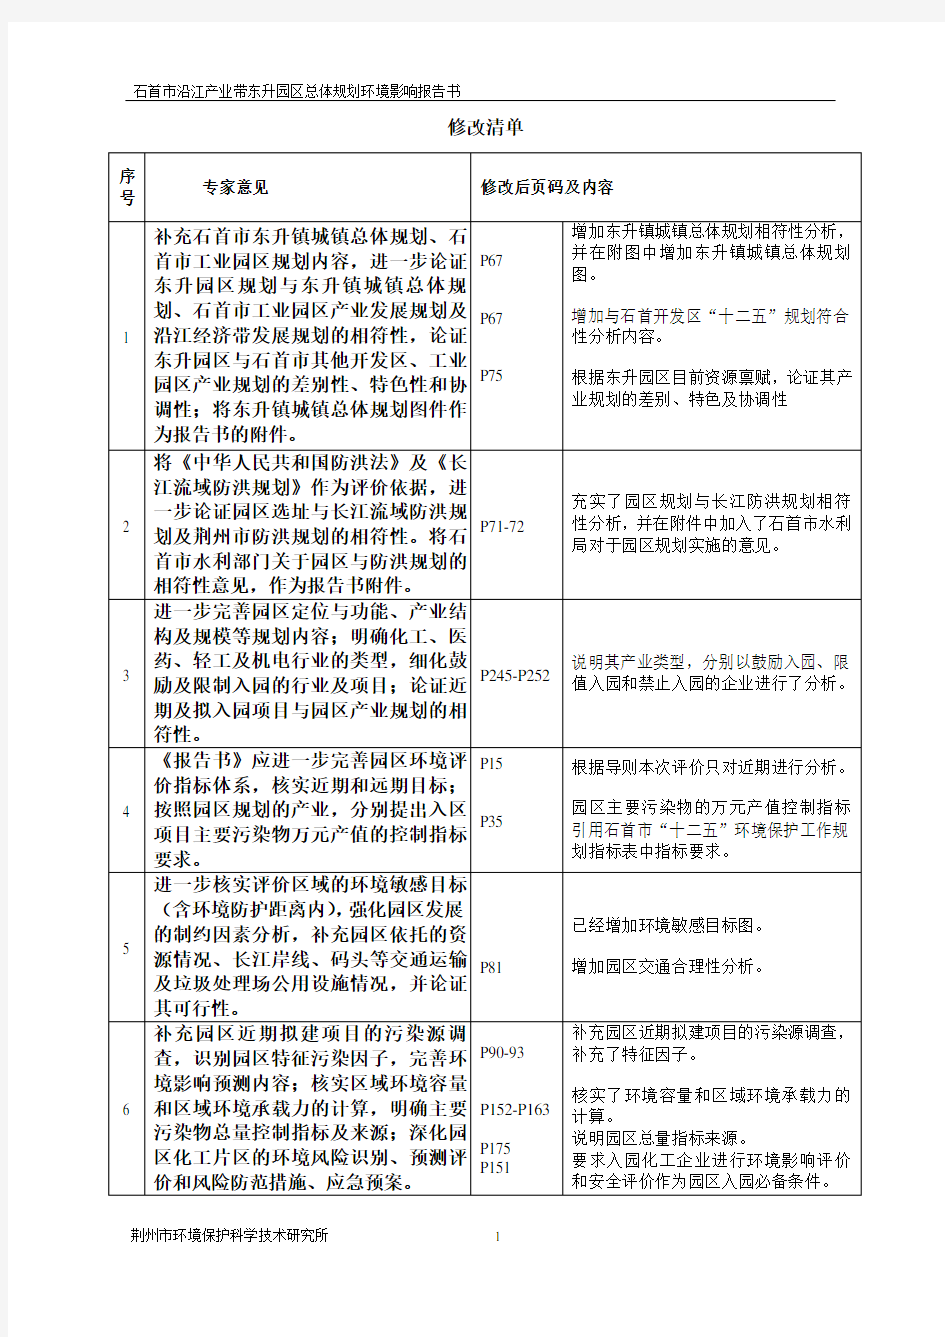 石首市沿江产业带东升园区总体规划环境影响报告书(报批稿)